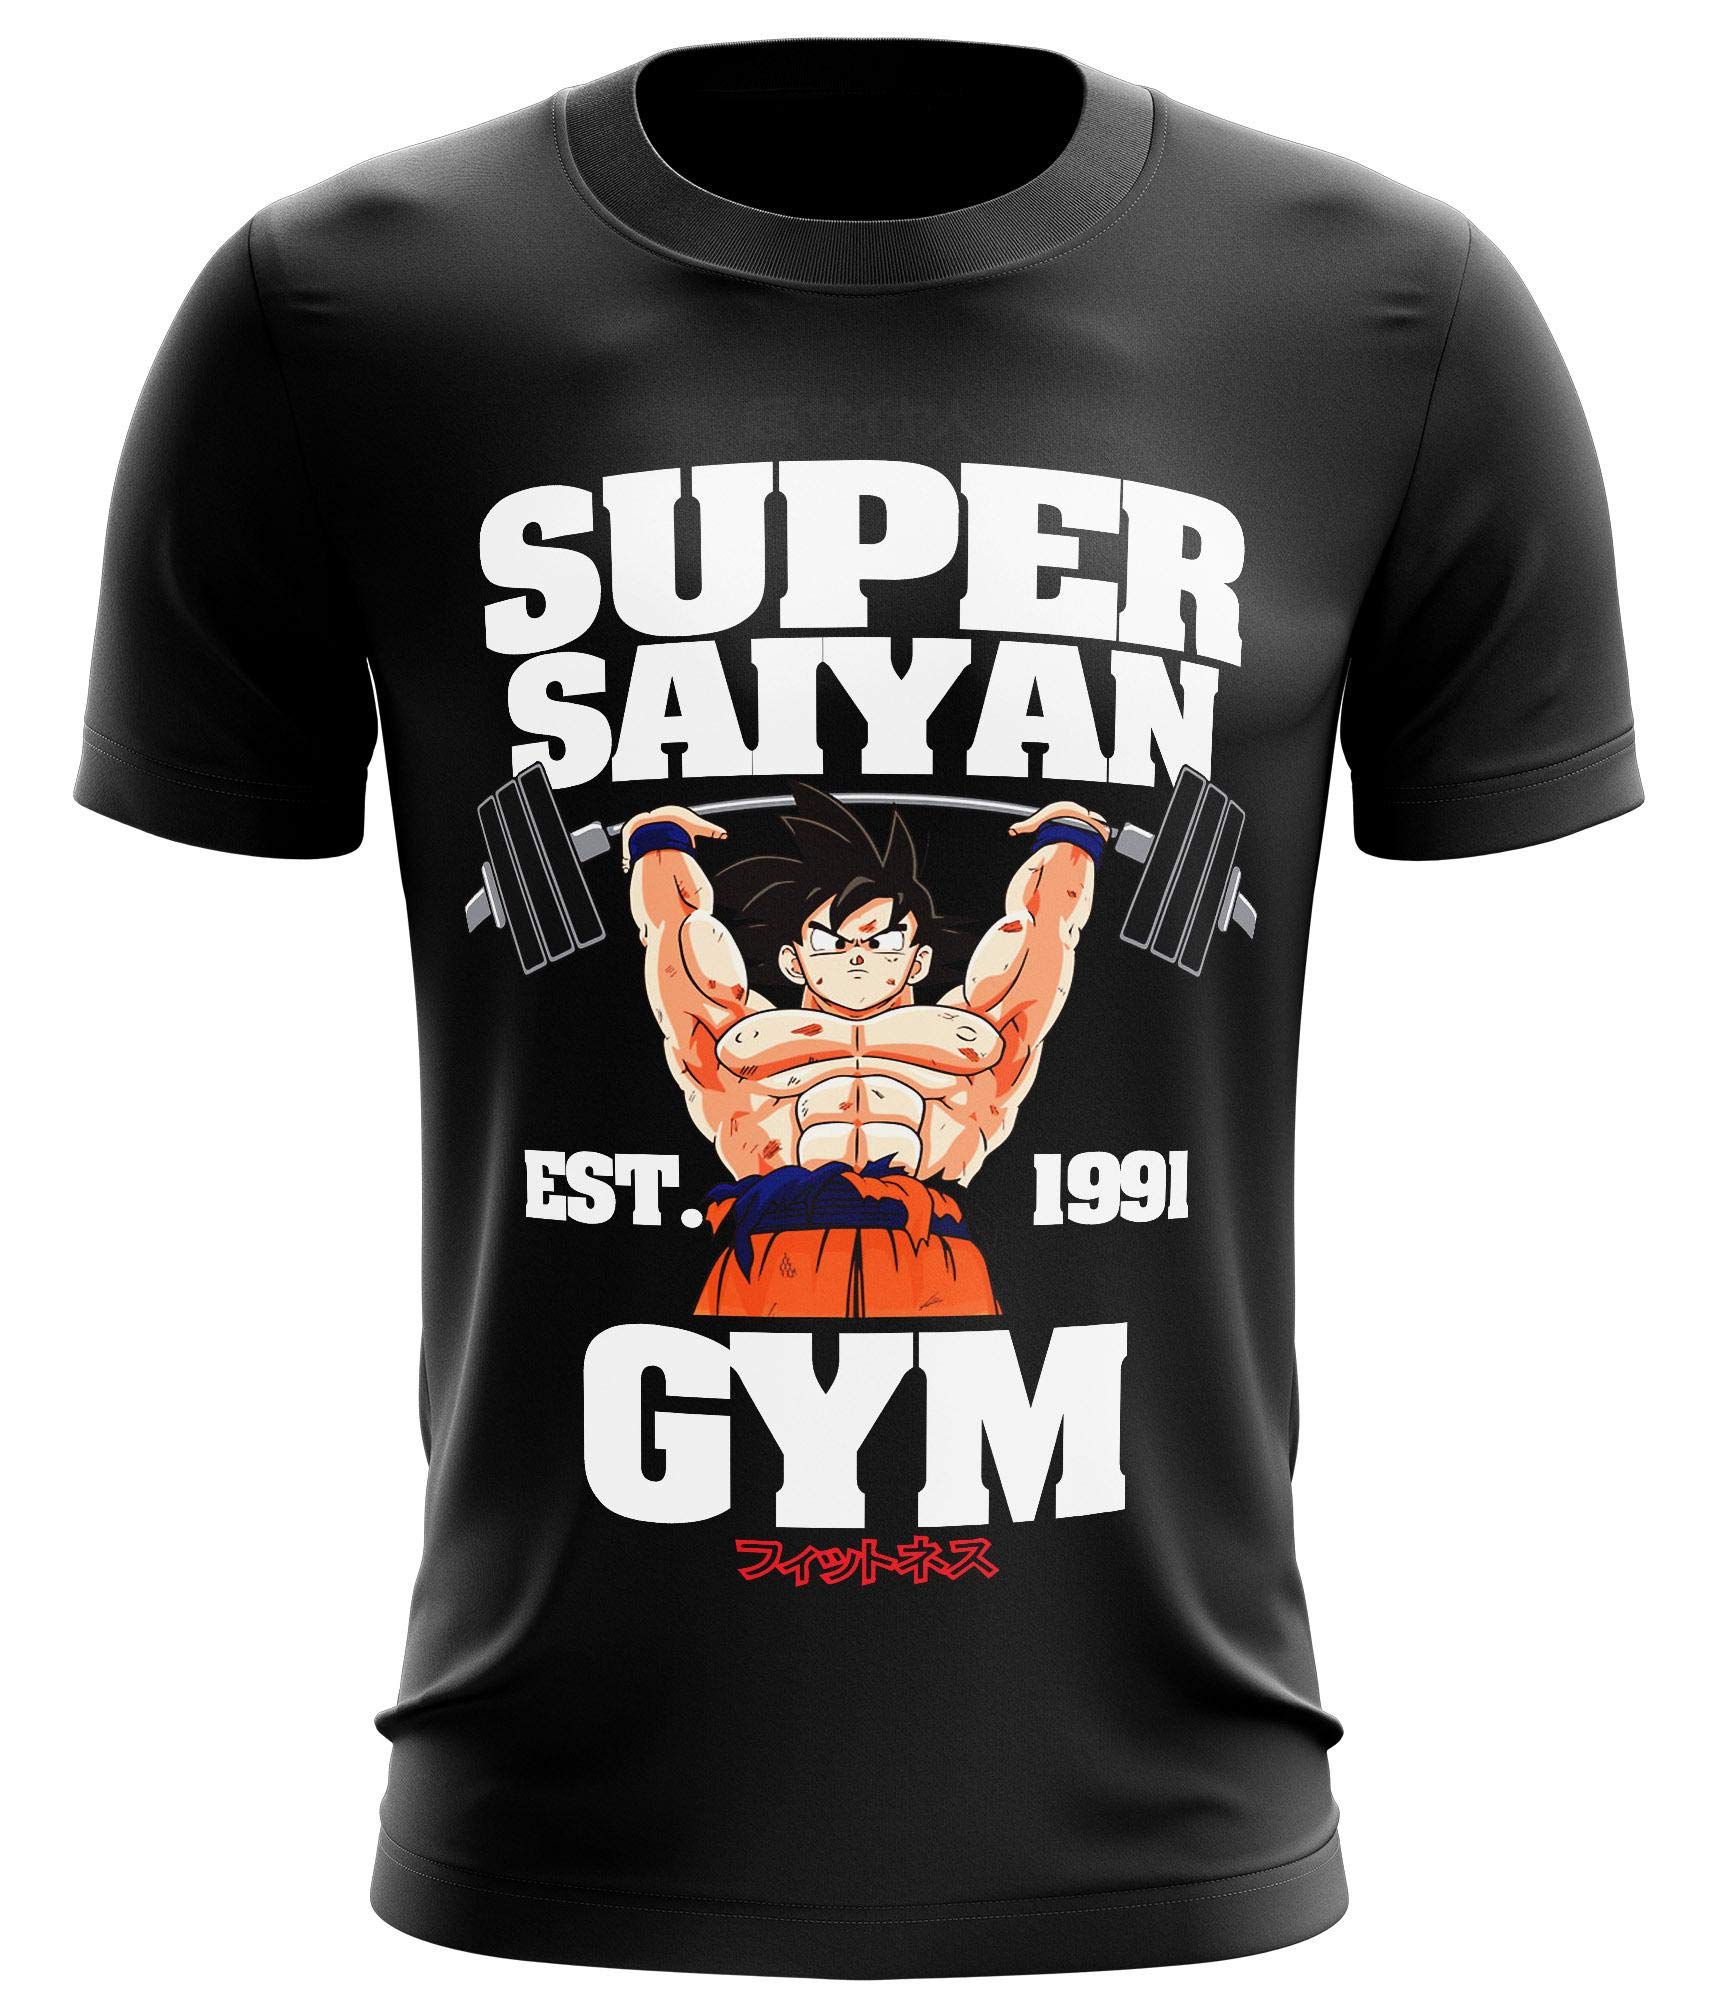 Stylotex Fitness T-Shirt Herren Sport Shirt Super Saiyan Gym est. 1991 Gym Tshirts für Performance beim Training | Männer Kurzarm | Funktionelle Sport Bekleidung, Farbe:schwarz, Größe:S